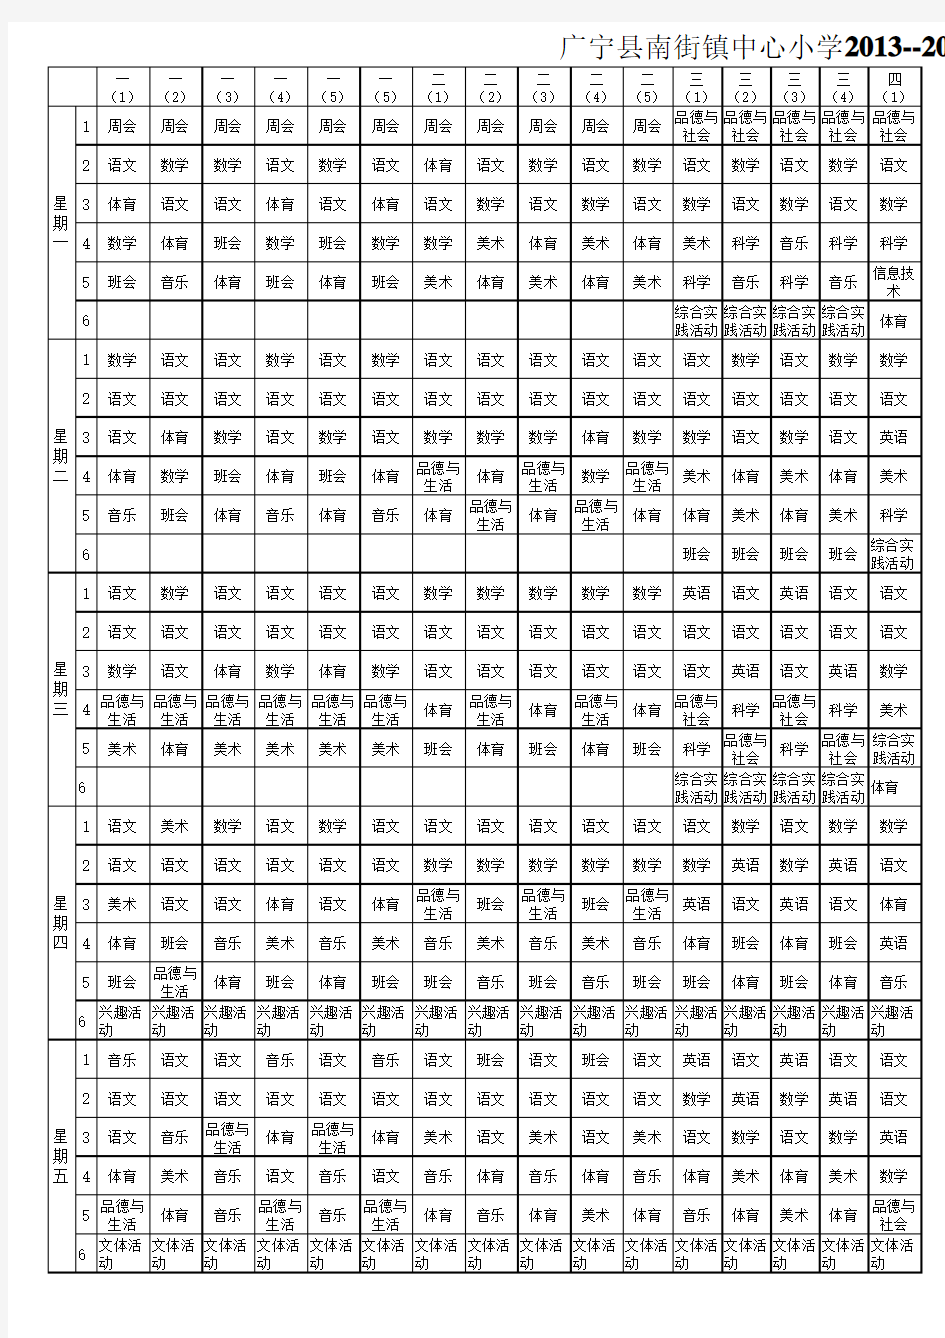 广宁县南街镇中心小学2013--2014学年度第二学期课程总表